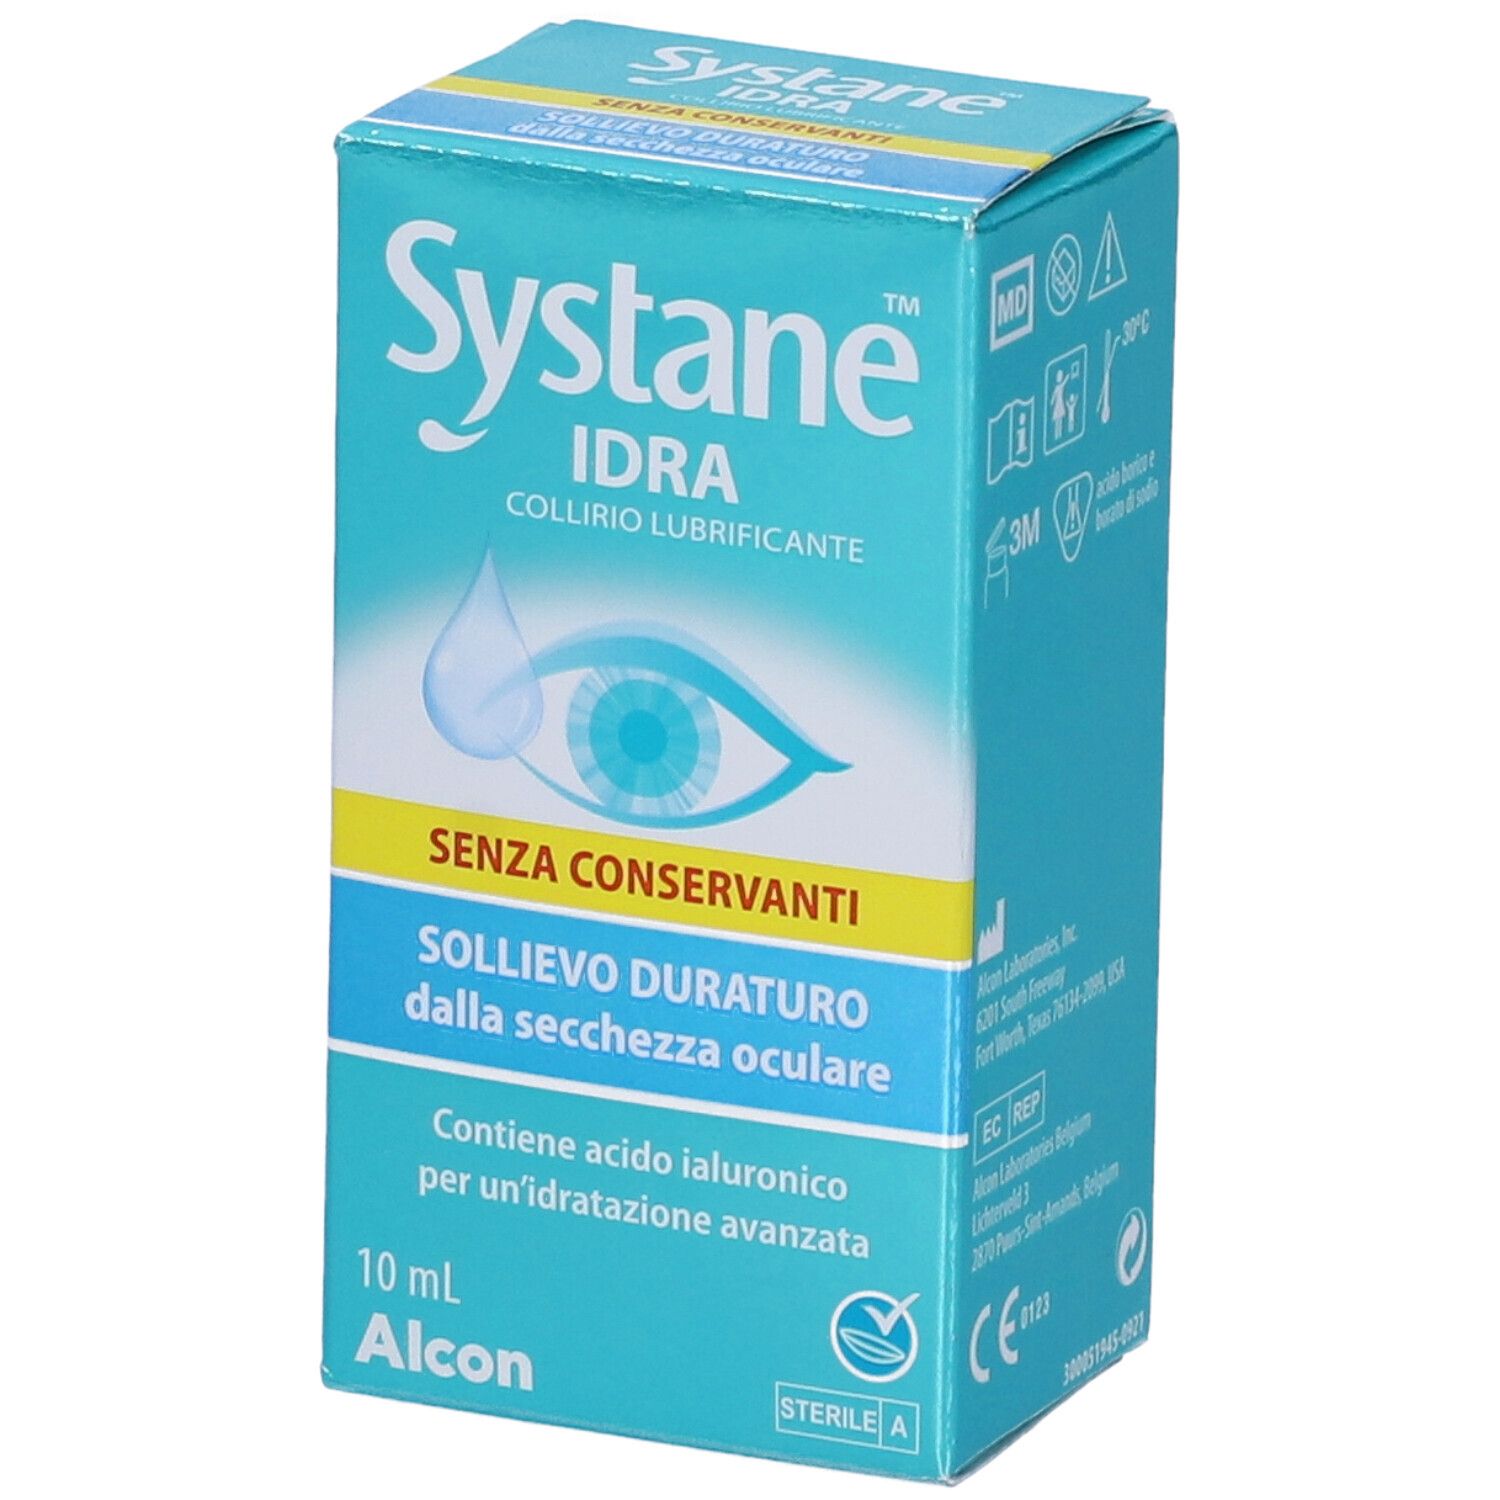 Systane IDRA Collirio Lubrificante 10 ml | Redcare